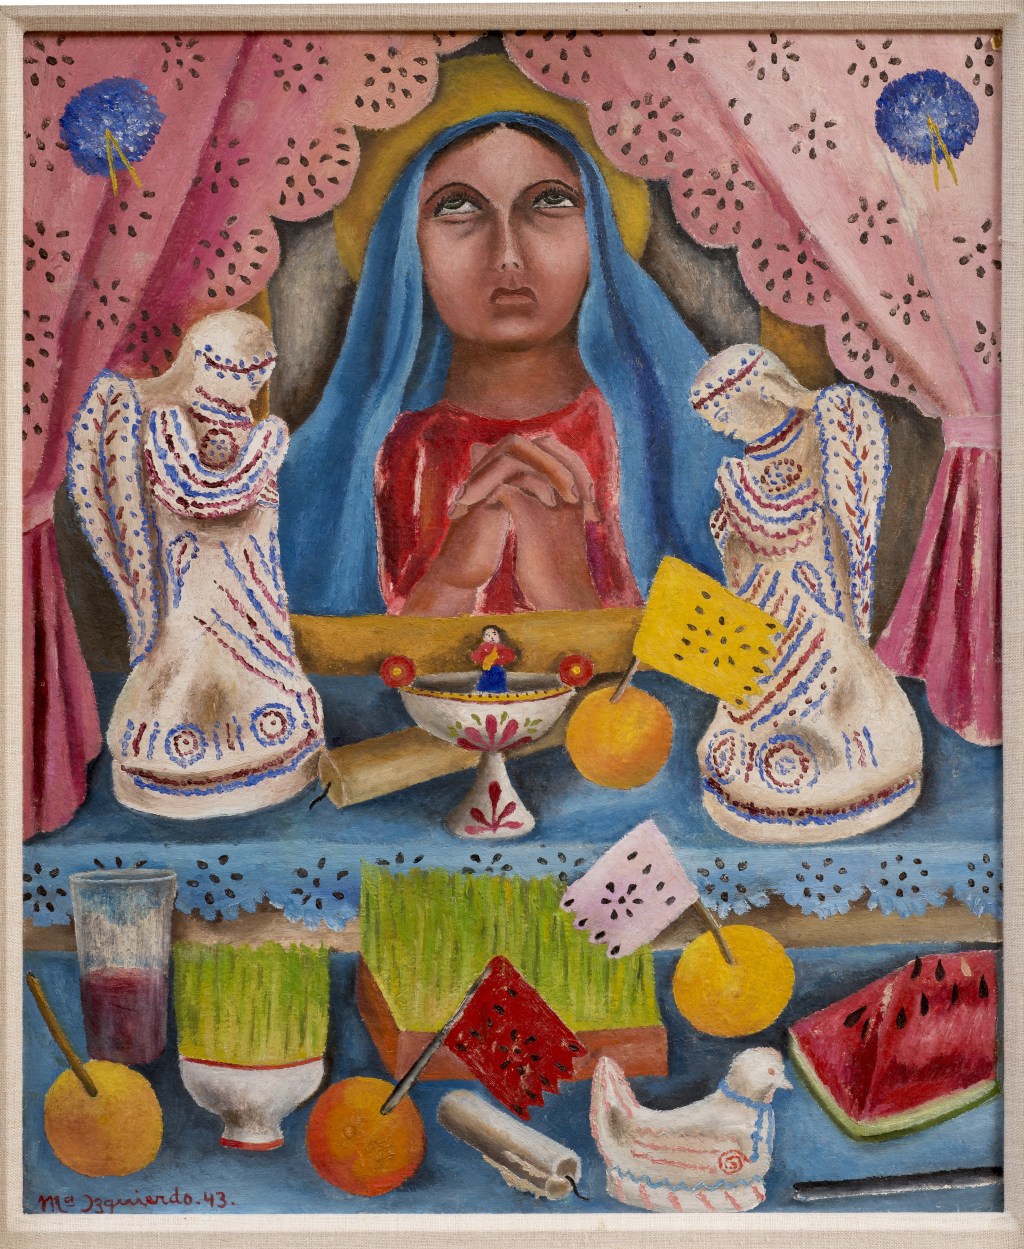 'Our Lady of Sorrows' (1943), de María Izquierdo. 